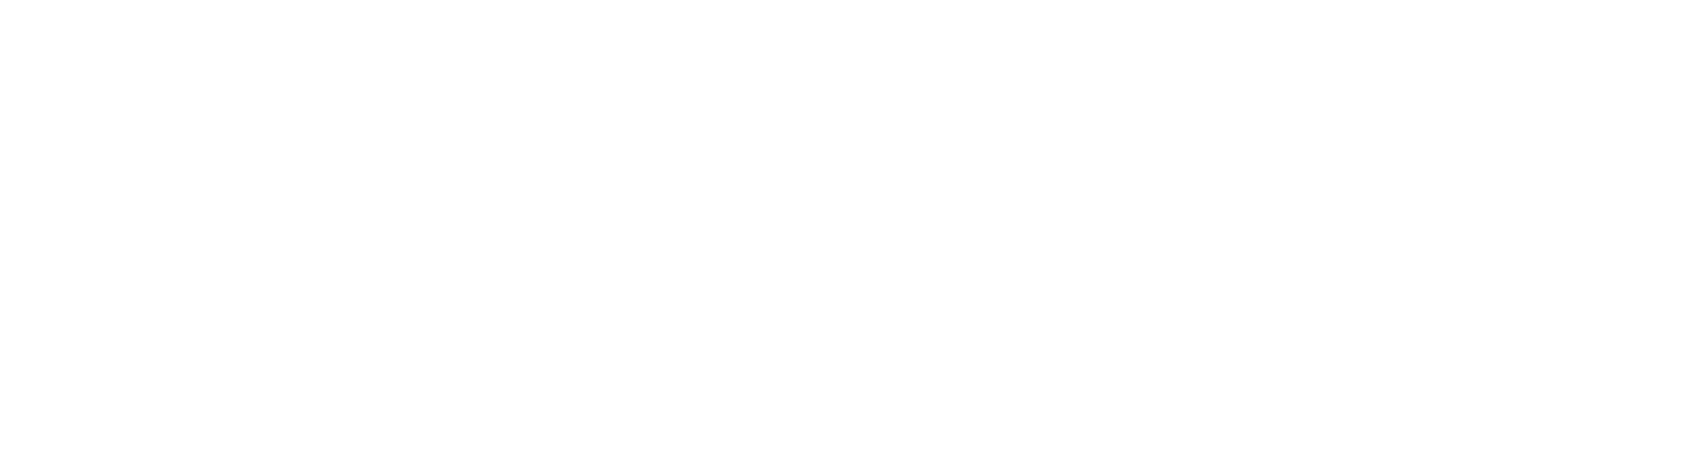 FIGS Logo groß für dunkle Hintergründe (transparentes PNG)